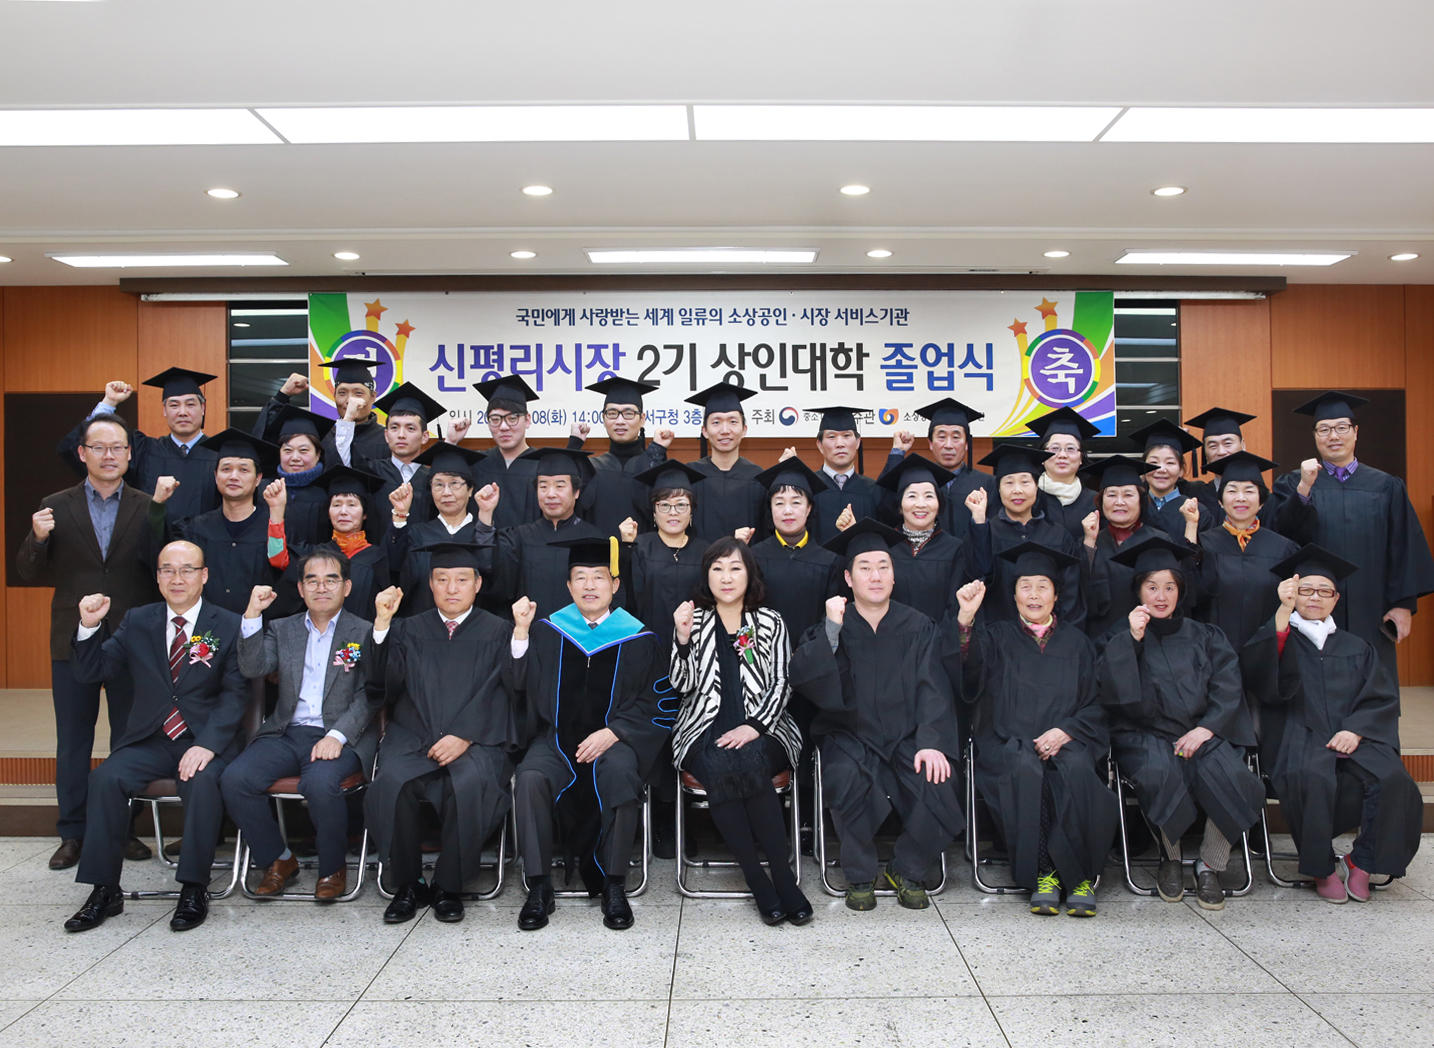 신평리시장 제2기 상인대학 졸업식 (11.8. 3층회의실) 2